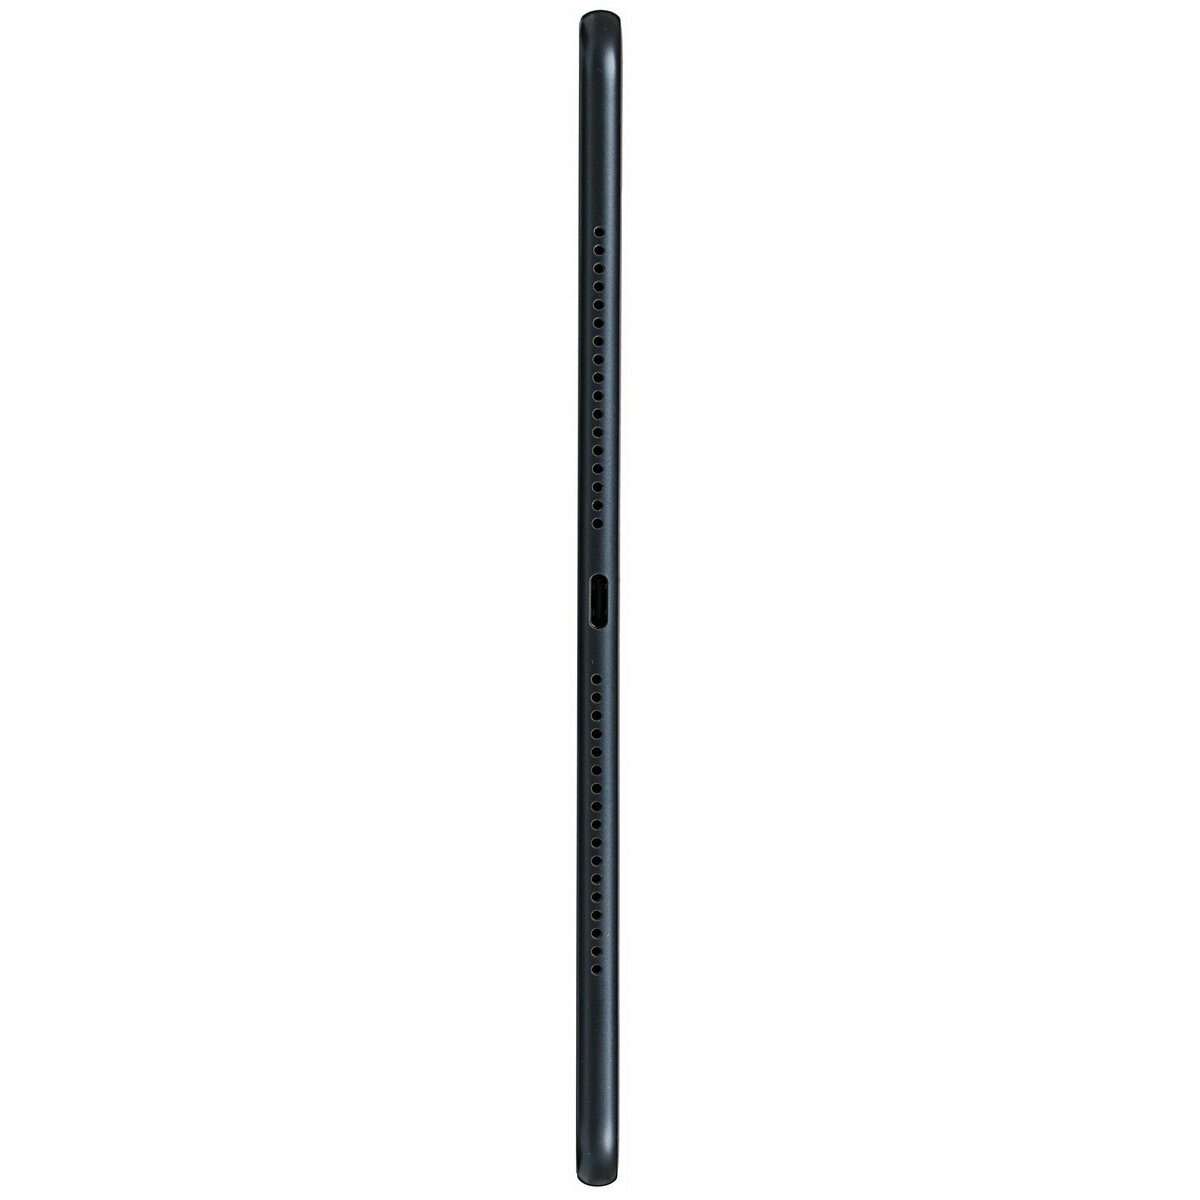 Планшет Huawei MatePad Pro 12.6 8/256Gb, черный